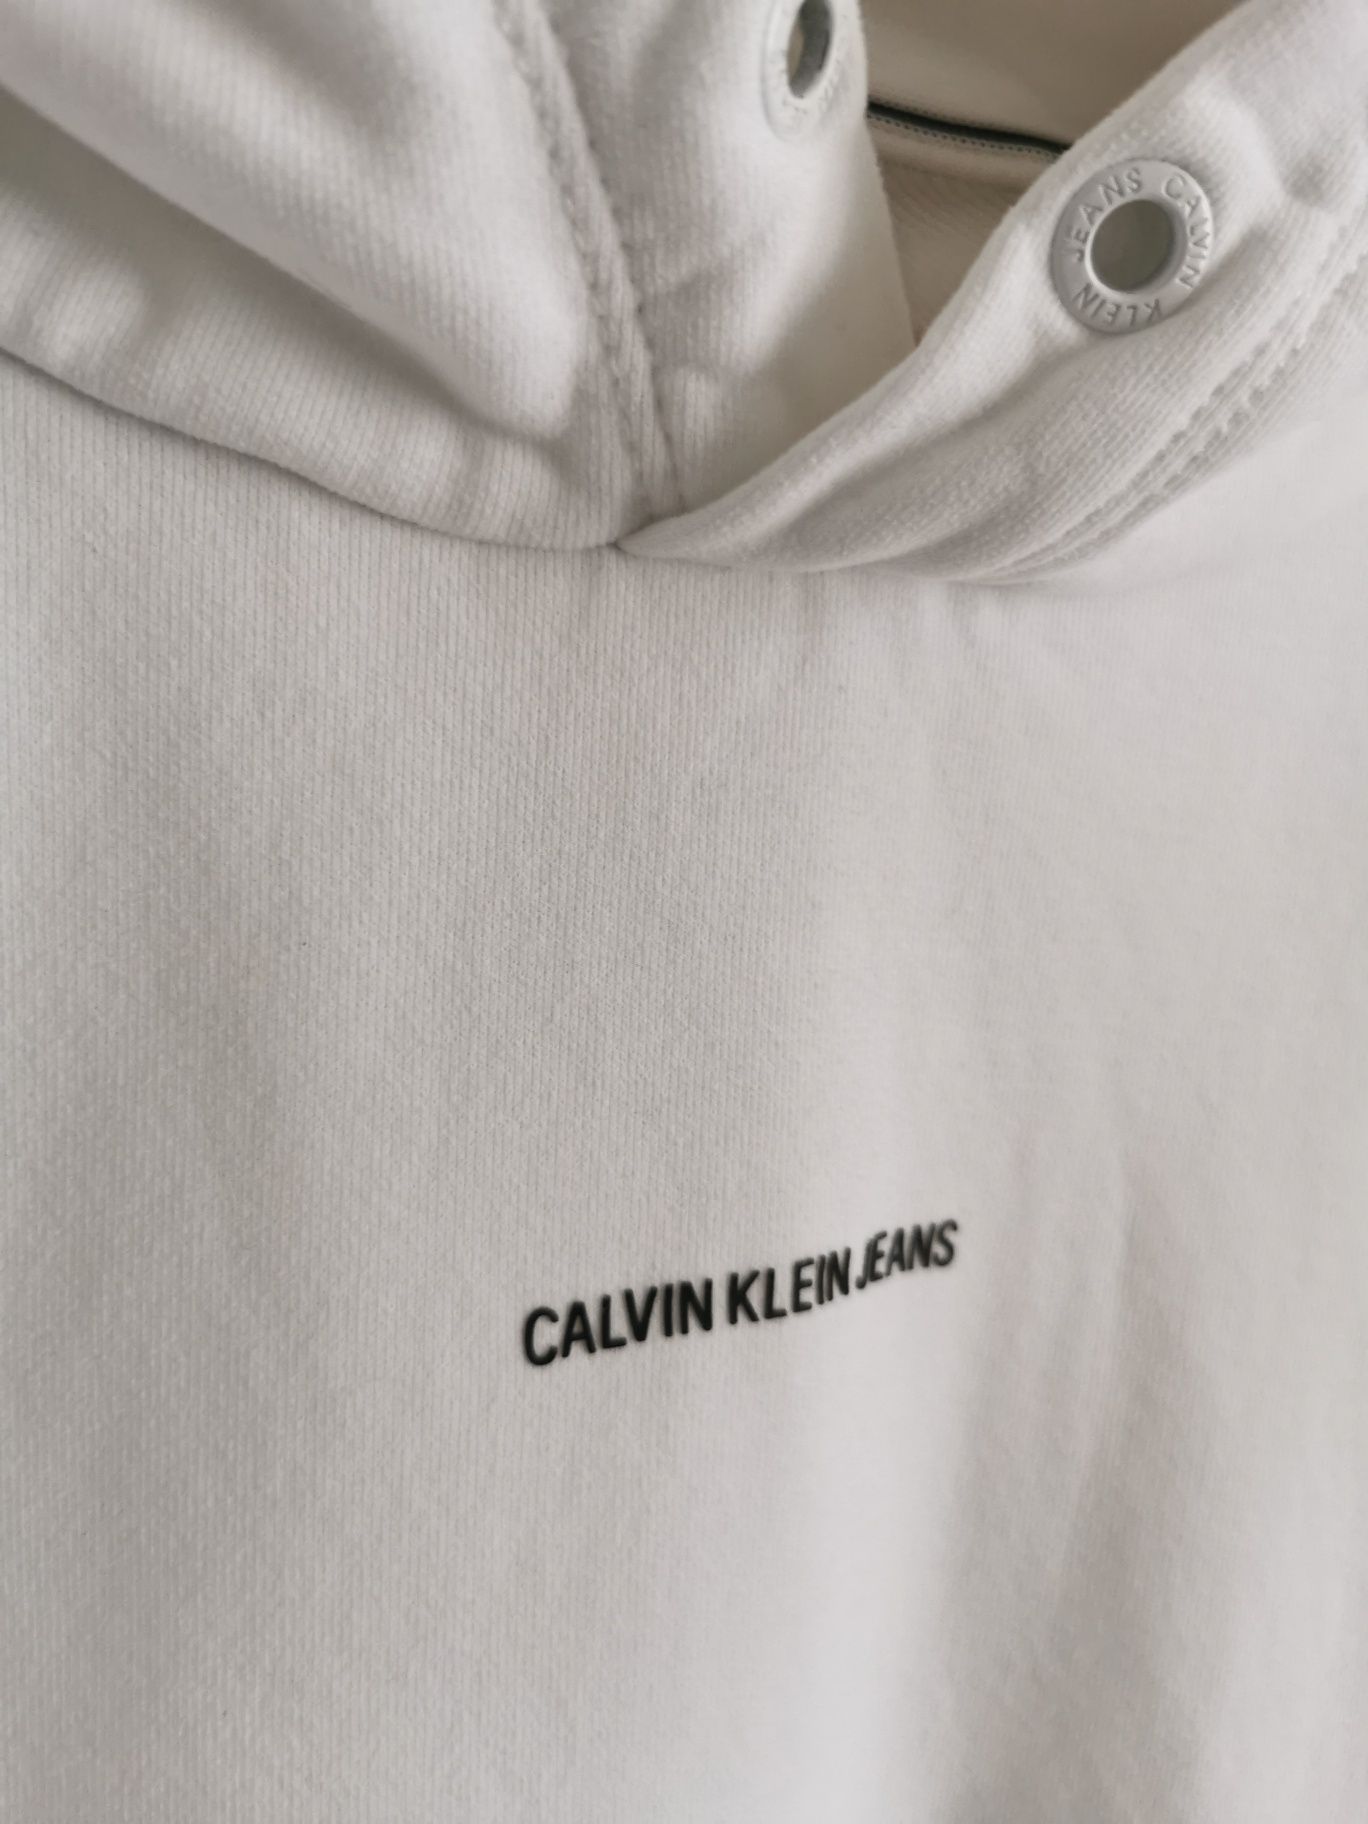 Calvin Klein bluza sportowa męska logowana bawełniana L